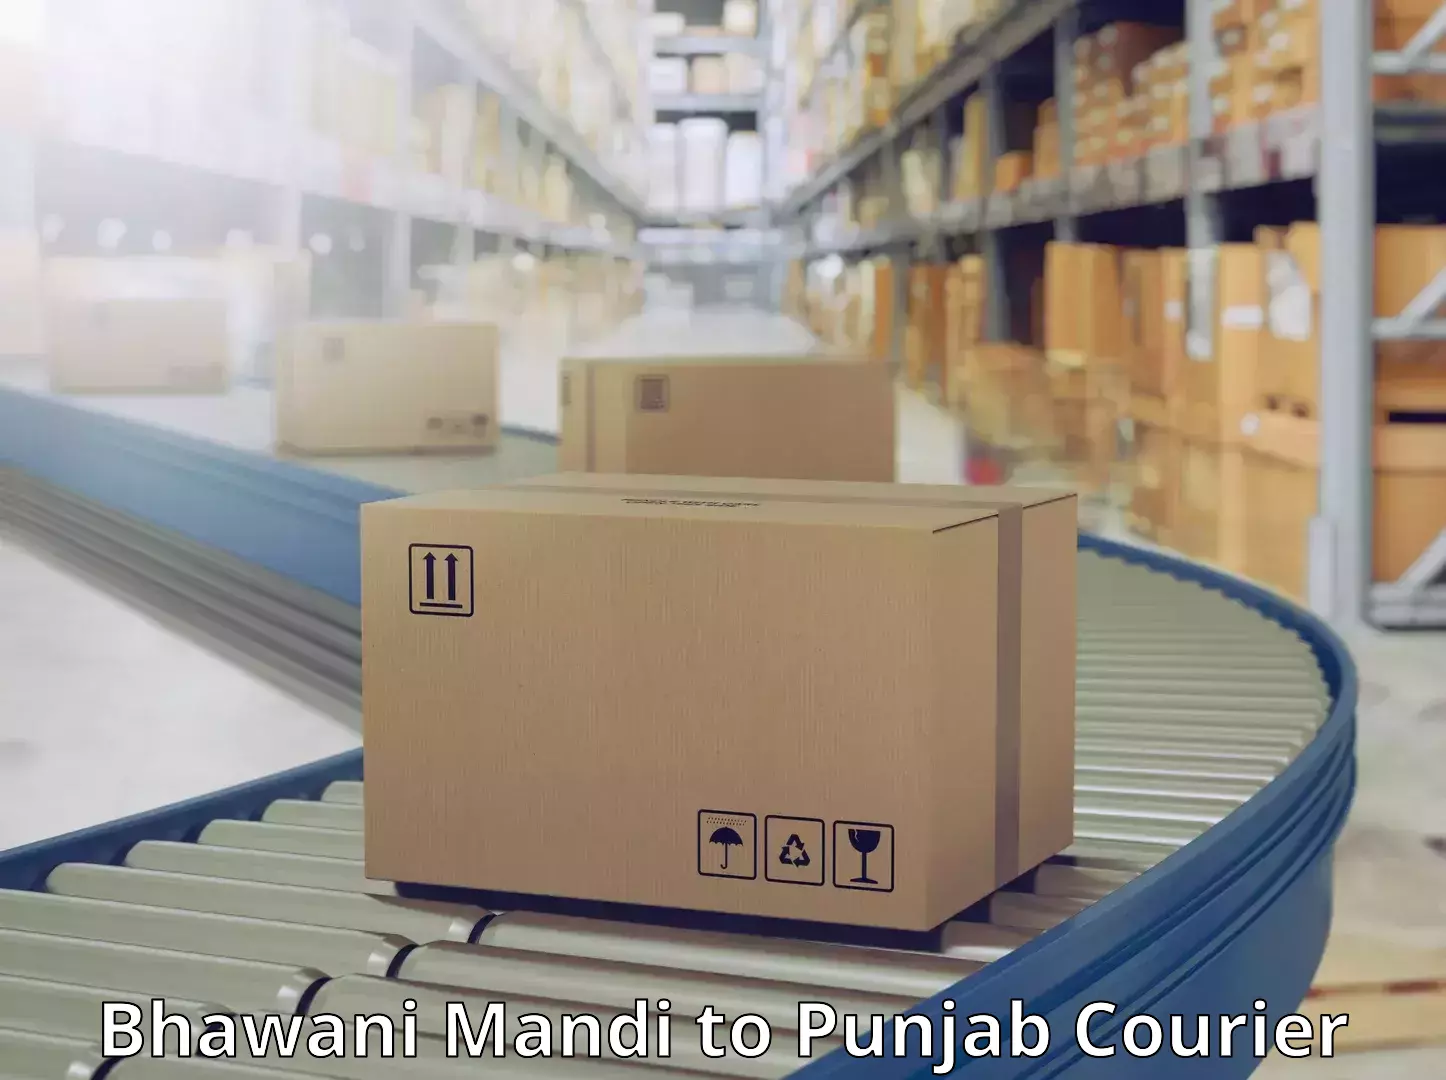 Seamless shipping experience Bhawani Mandi to Punjab